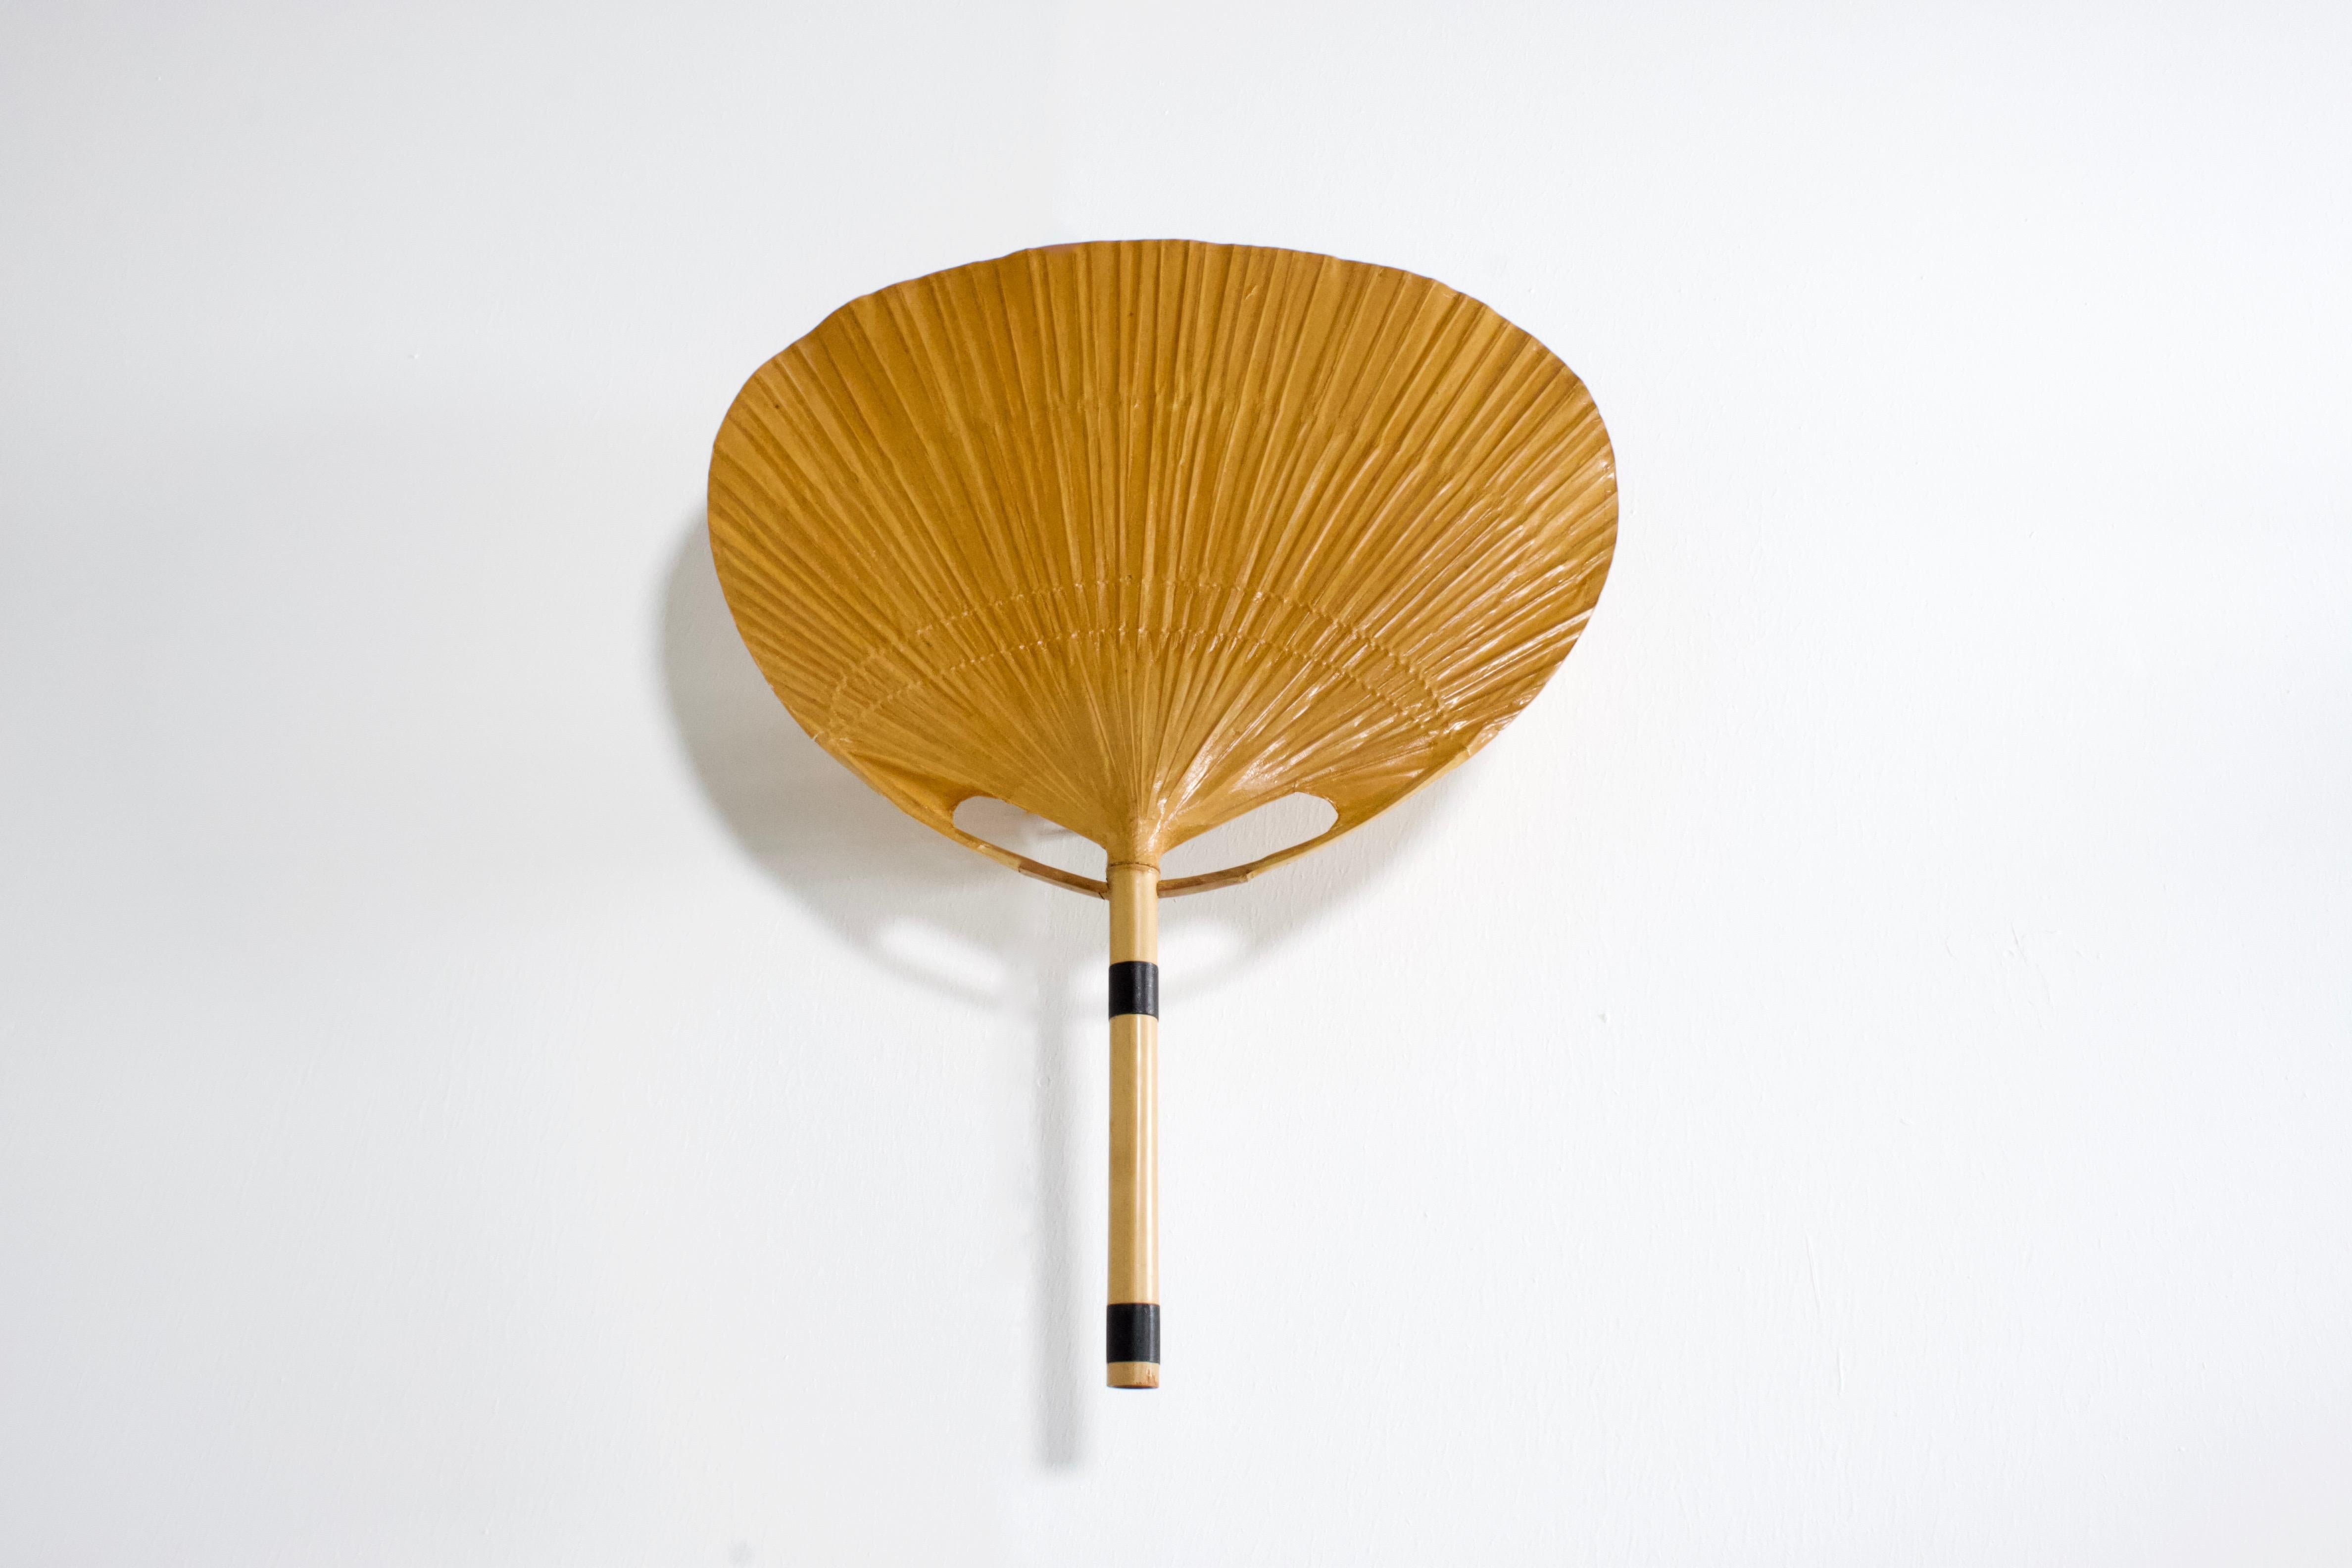 Bamboo Set of ‘Uchiwa’ Fan Wall Lamps by Ingo Maurer, 1974